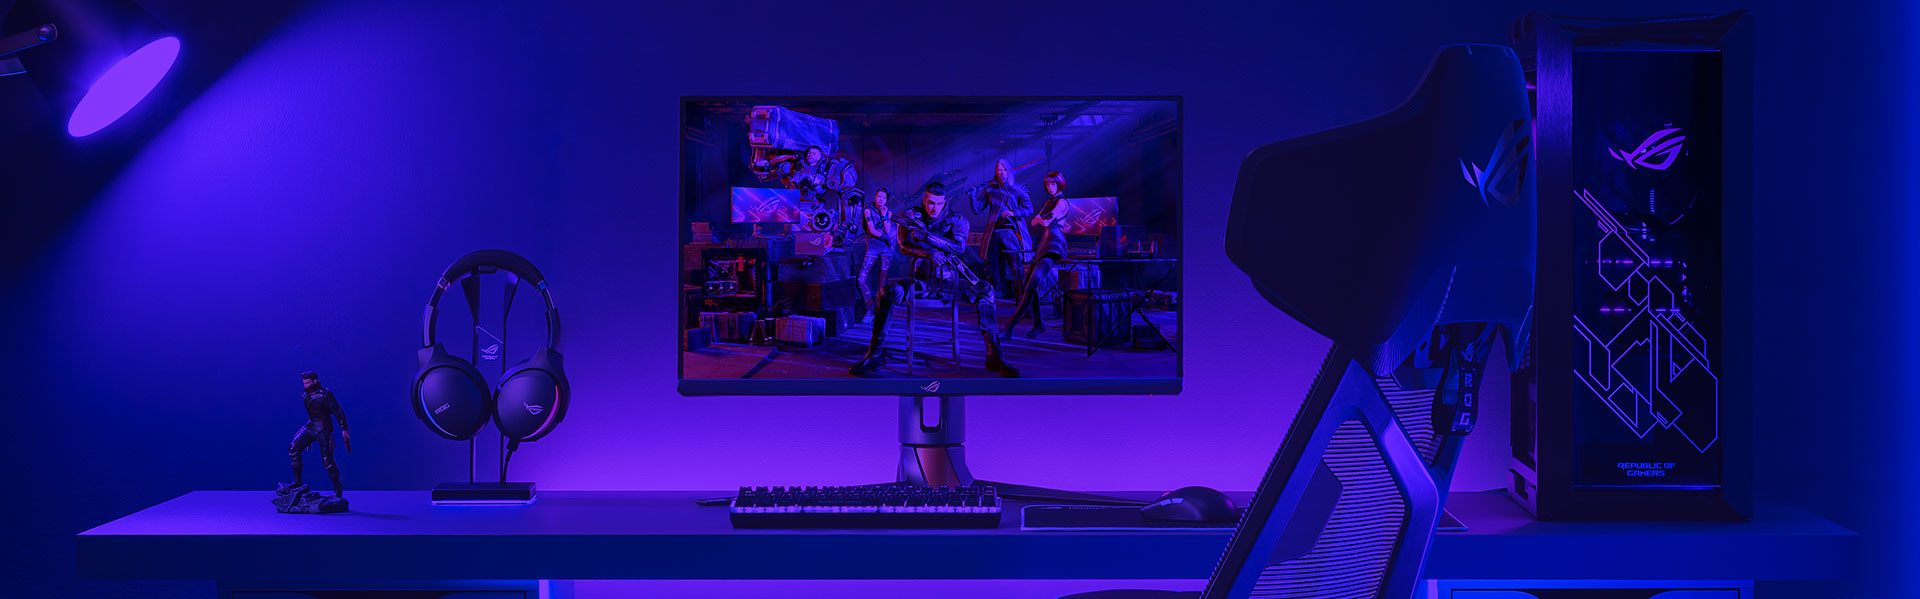 ROG gaming-opstelling met een pc, monitor, set van toetsenbord en muis, en een headset